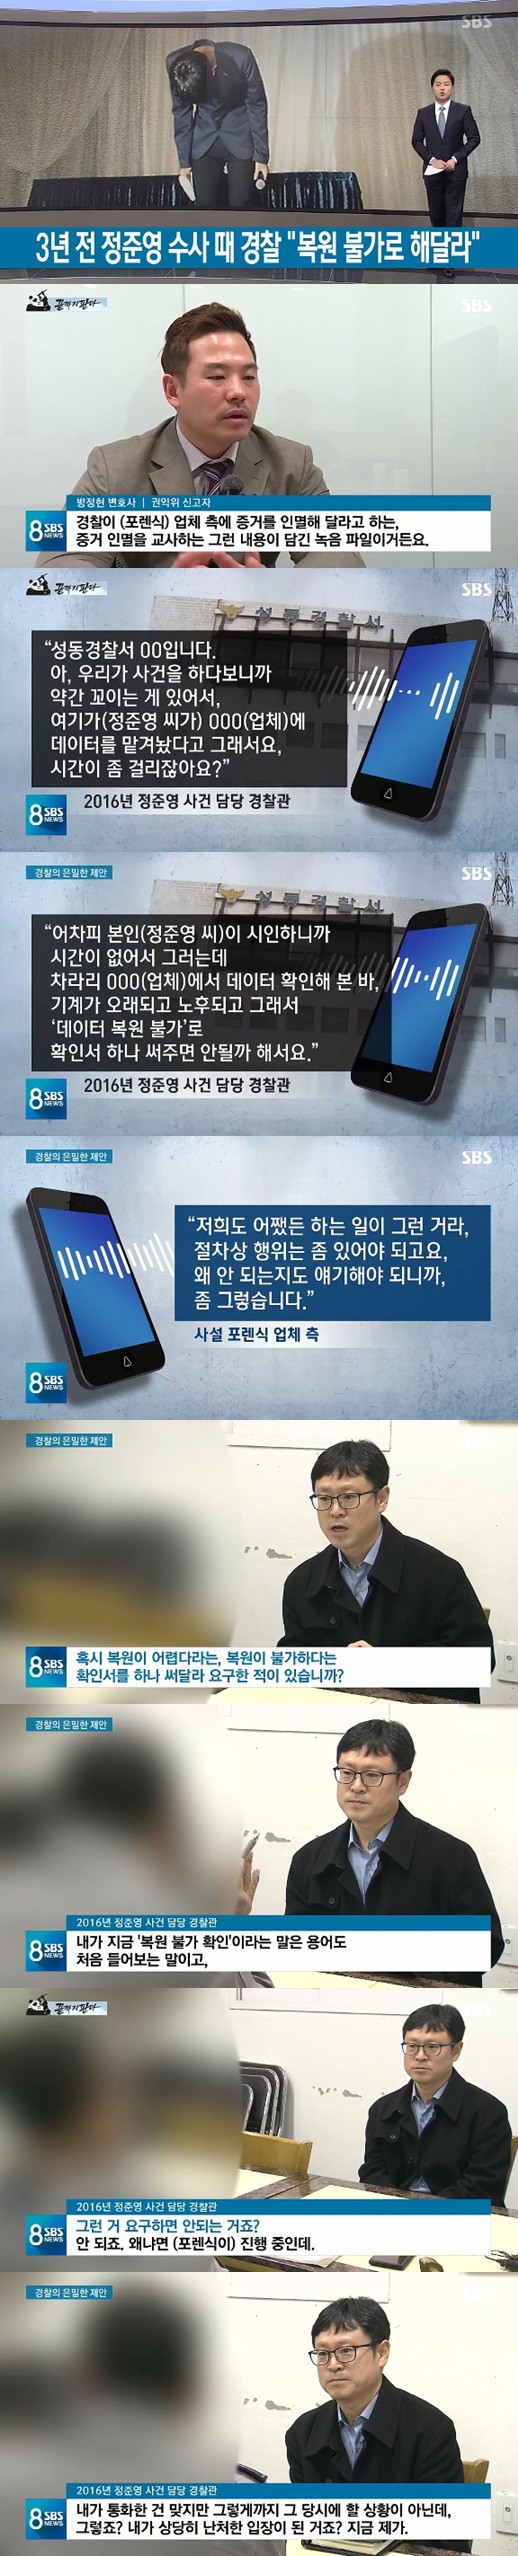 SBS tung tình tiết đinh trong vụ bê bối của Jung Joon Young: Có dấu hiệu nhờ cảnh sát tiêu hủy chứng cứ từ năm 2016 - Ảnh 2.